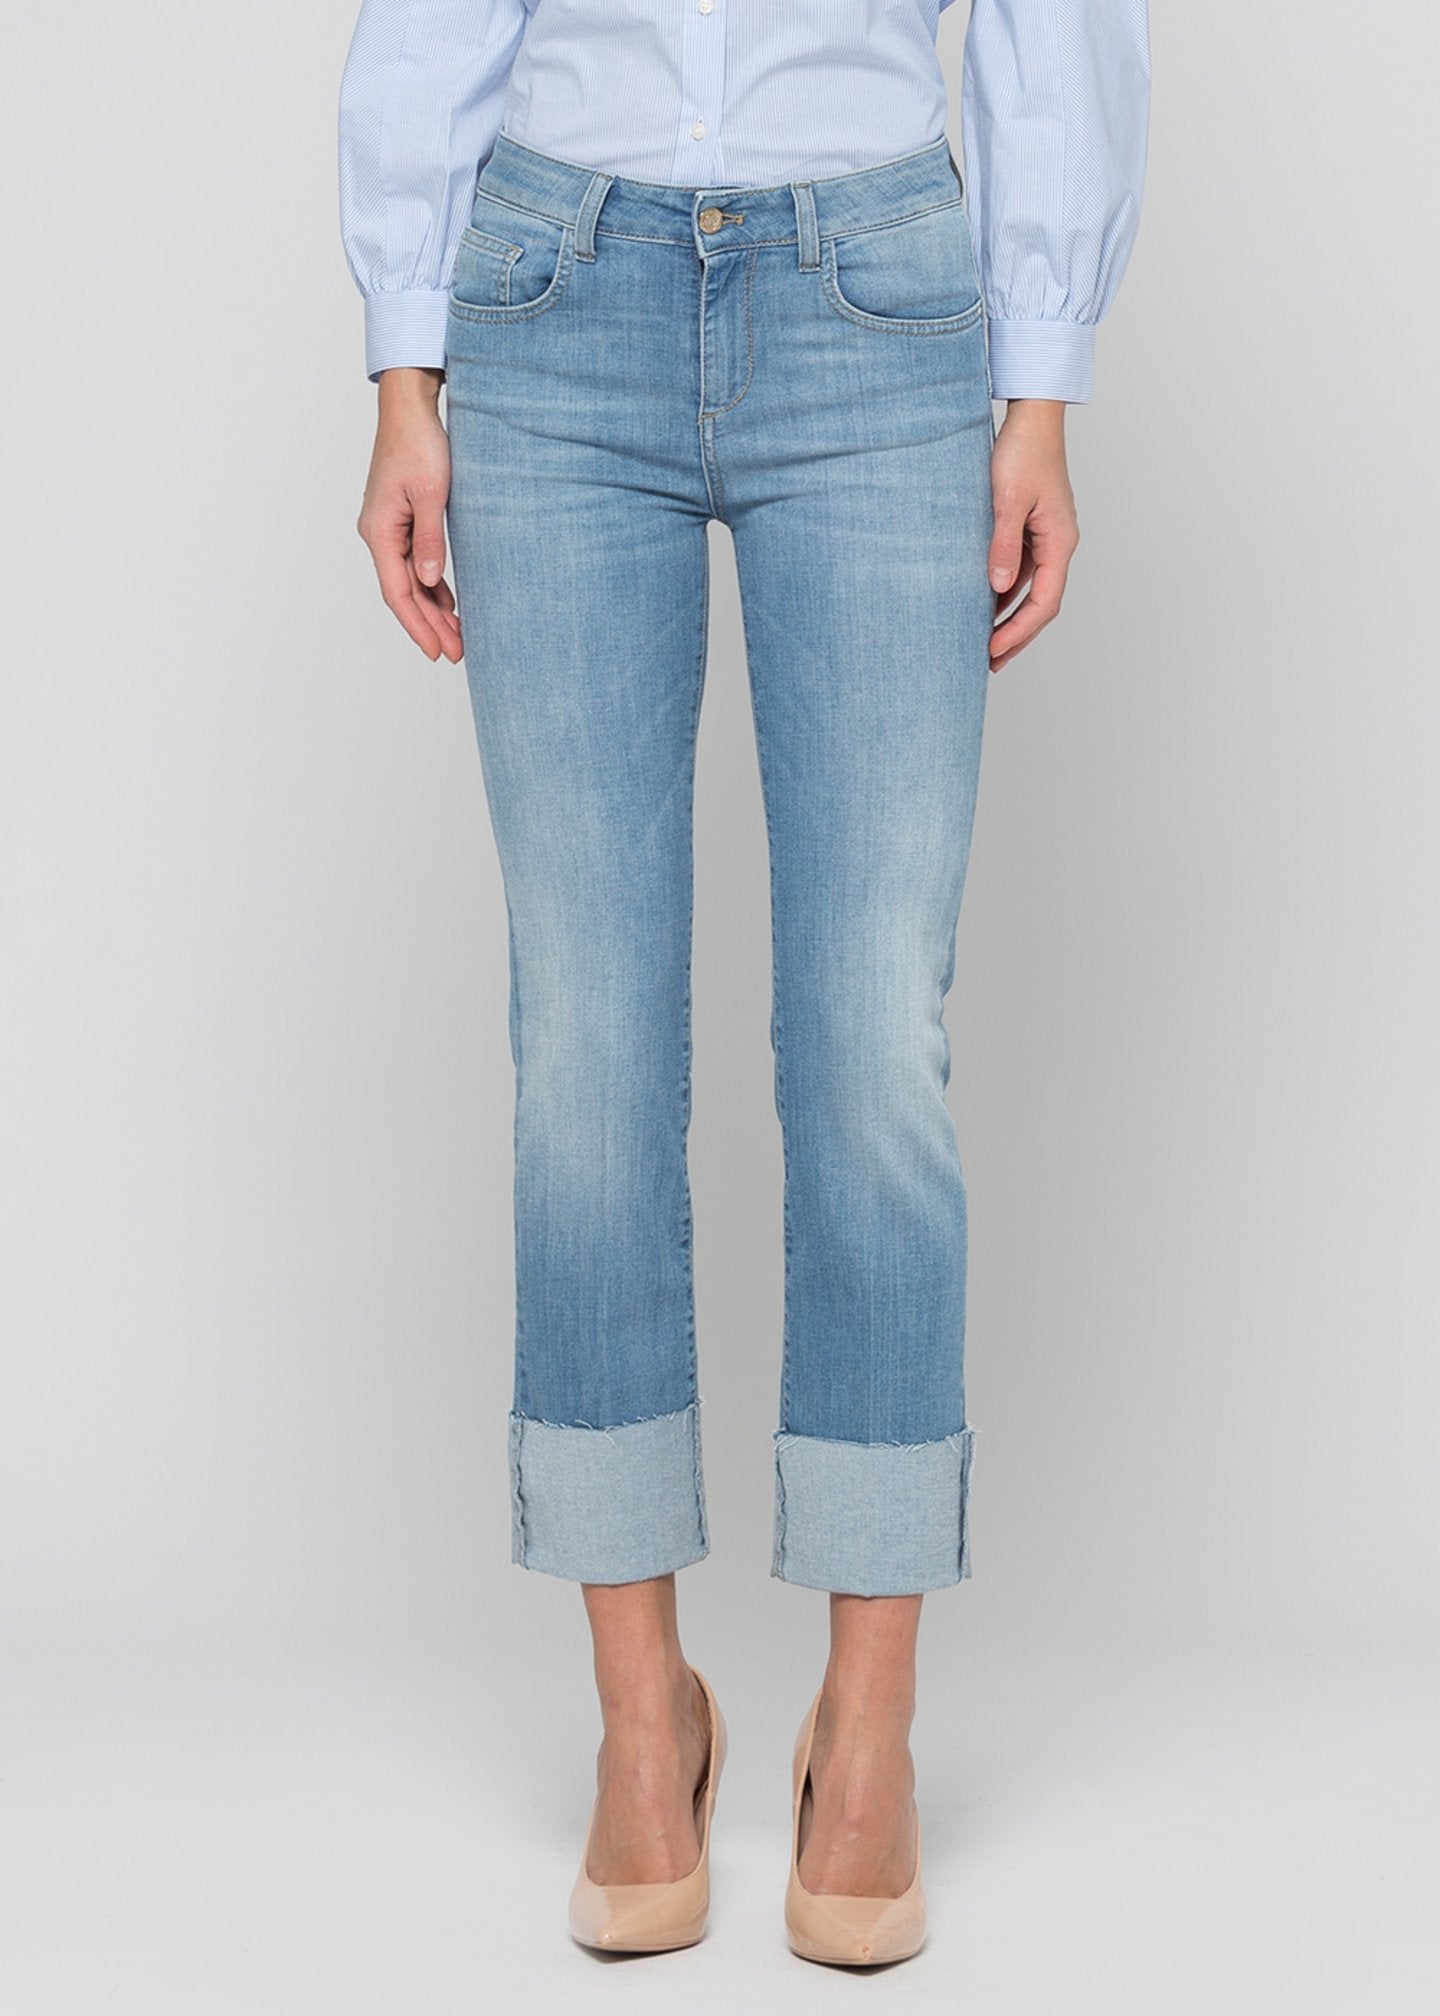 Pantalone denim slim leg, bottom up / Jeans - Ideal Moda